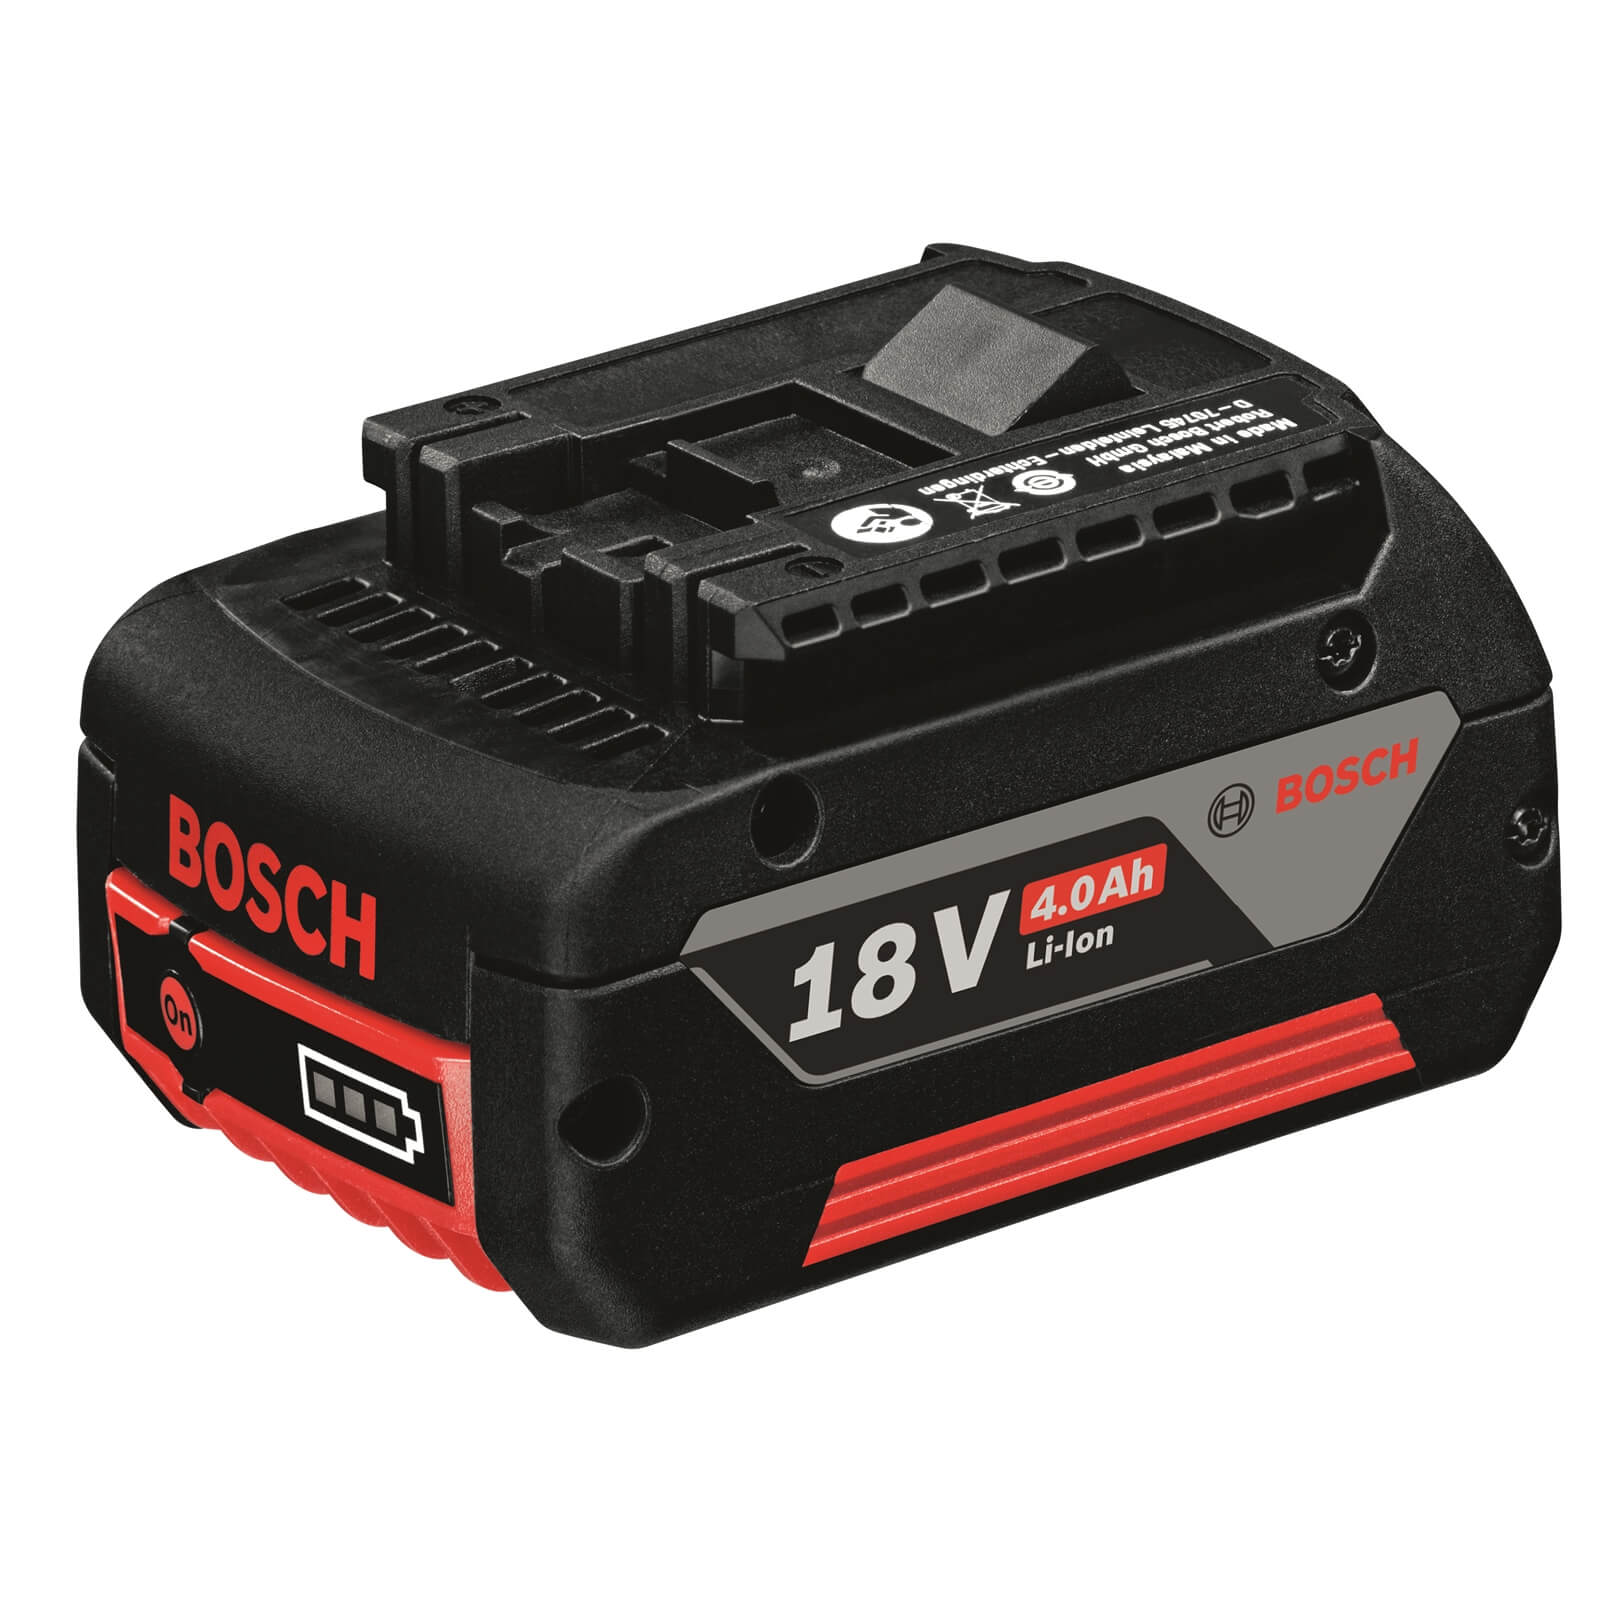 Bosch Pro 18V 4.0Ah Battery (Battery ONLY)